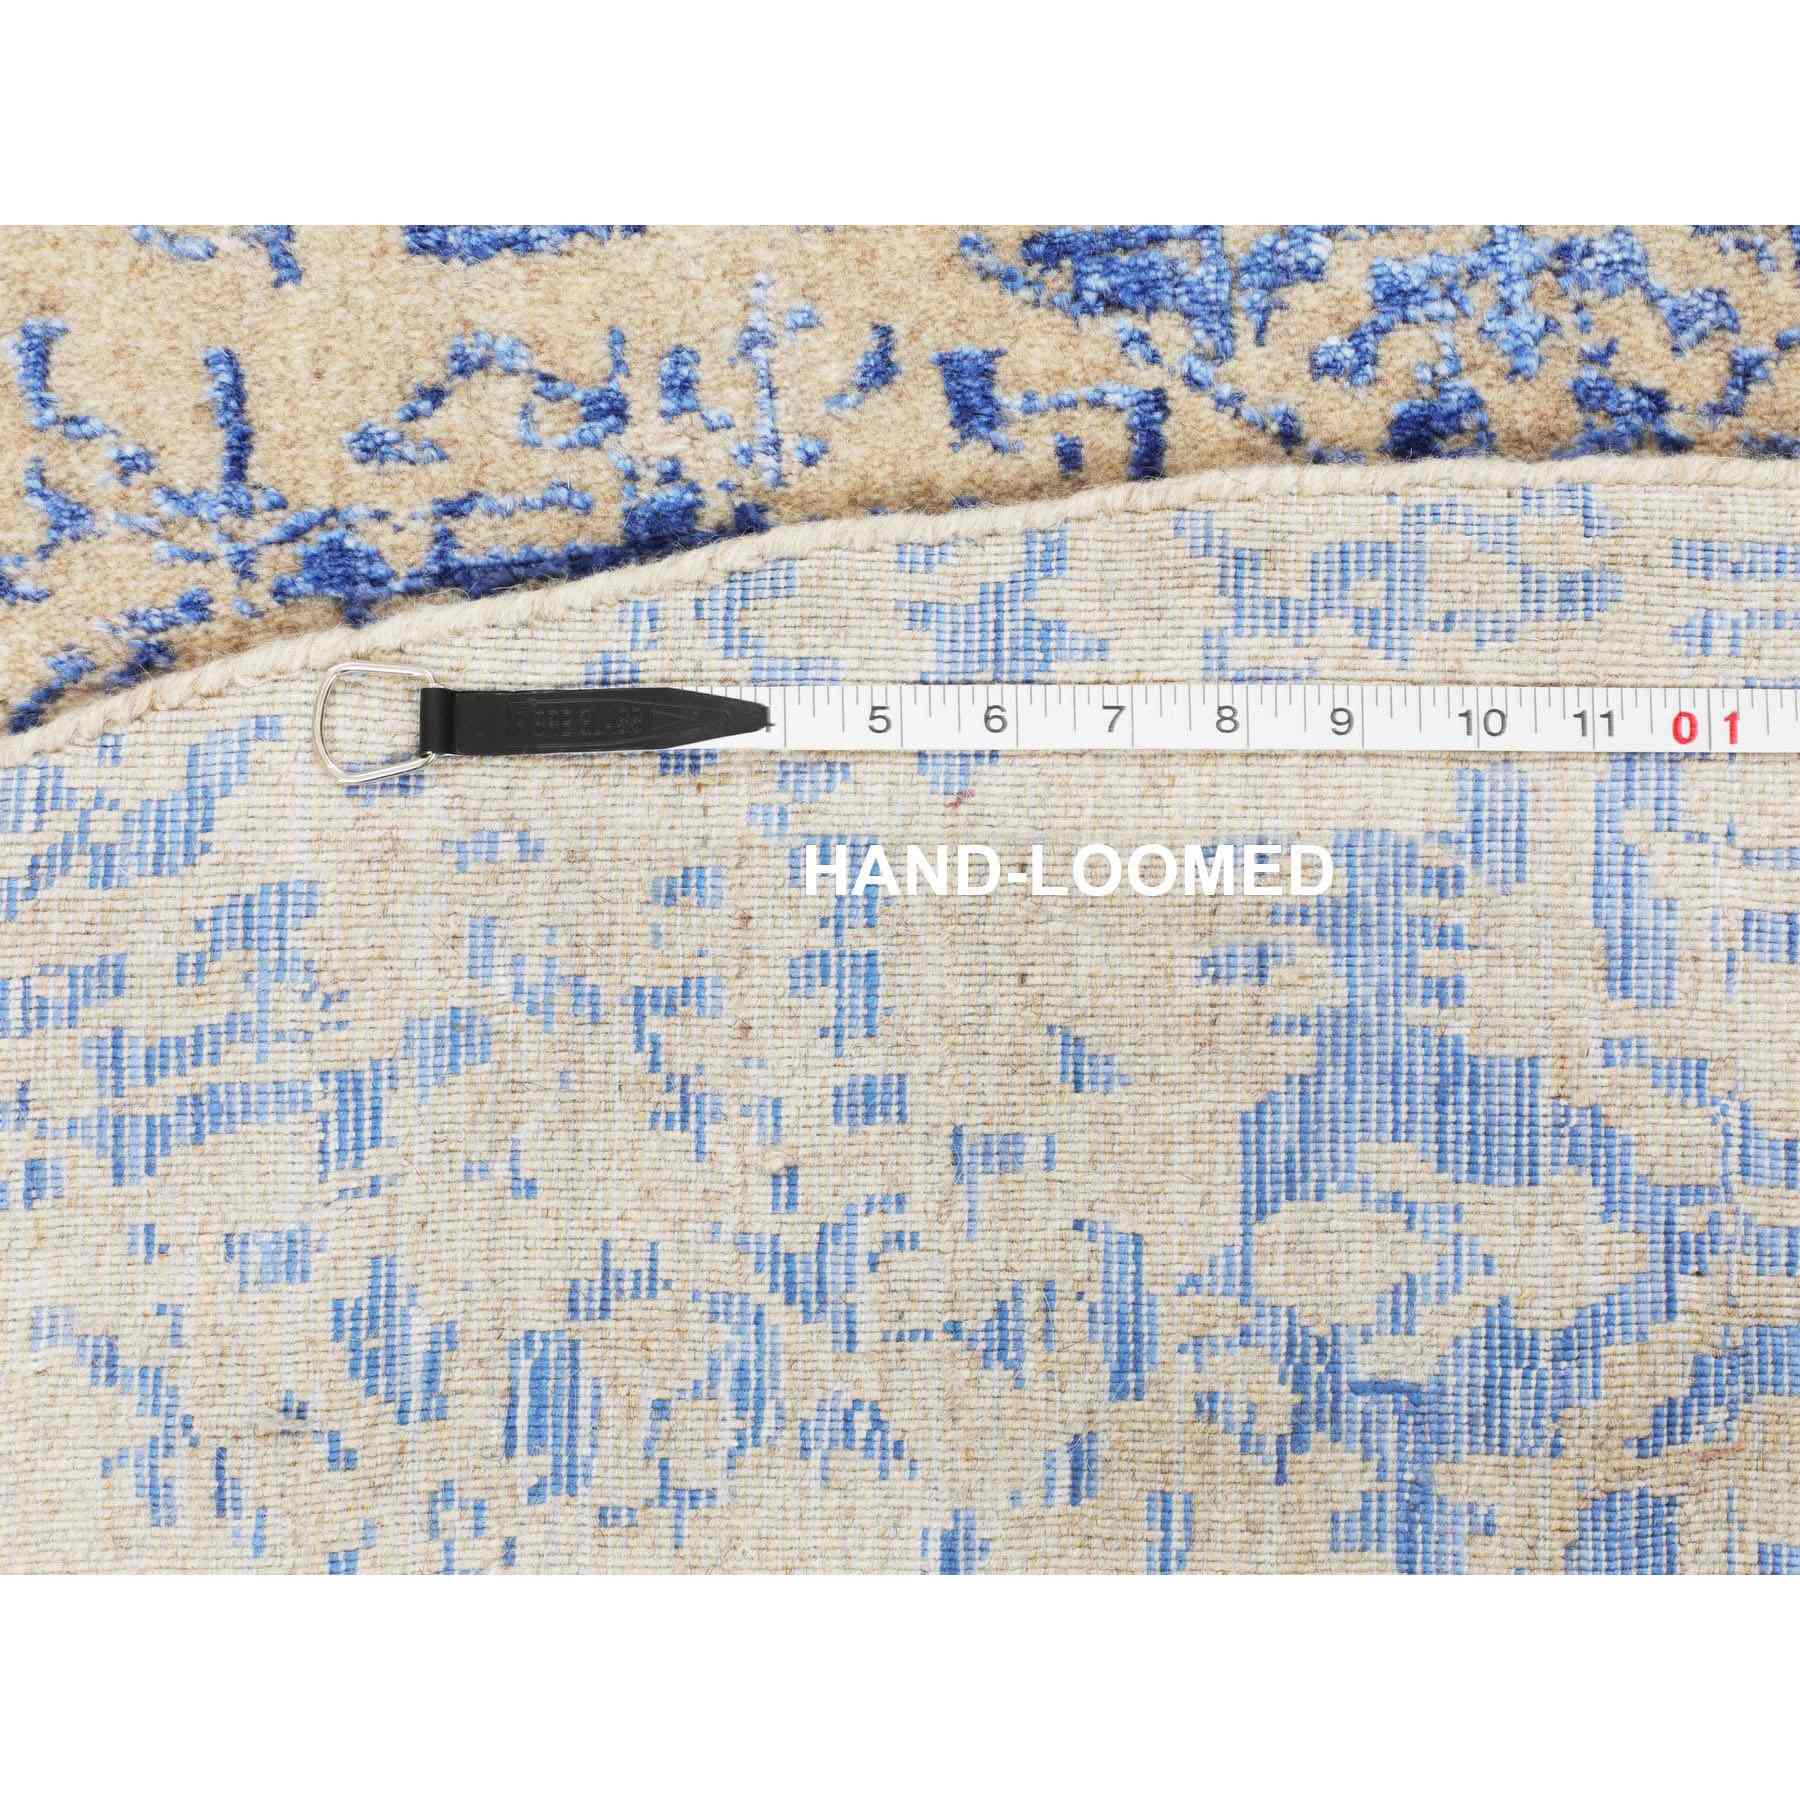 Mamluk-Hand-Loomed-Rug-290590